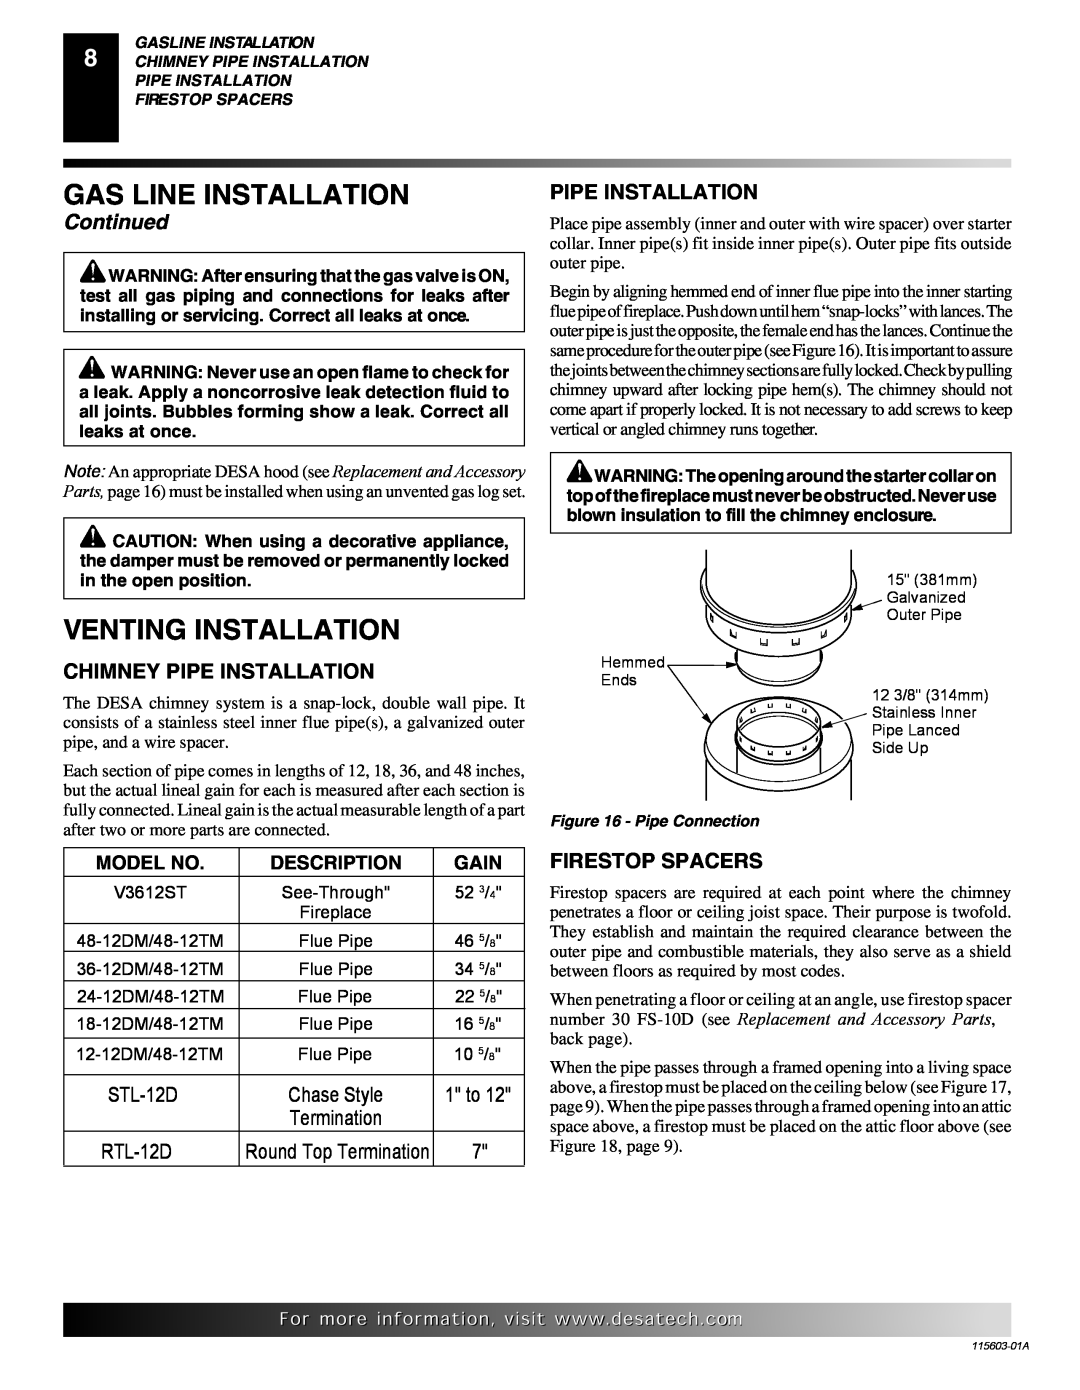 Desa (V)3612ST Venting Installation, Gas Line Installation, Continued, Chimney Pipe Installation, STL-12D, RTL-12D 